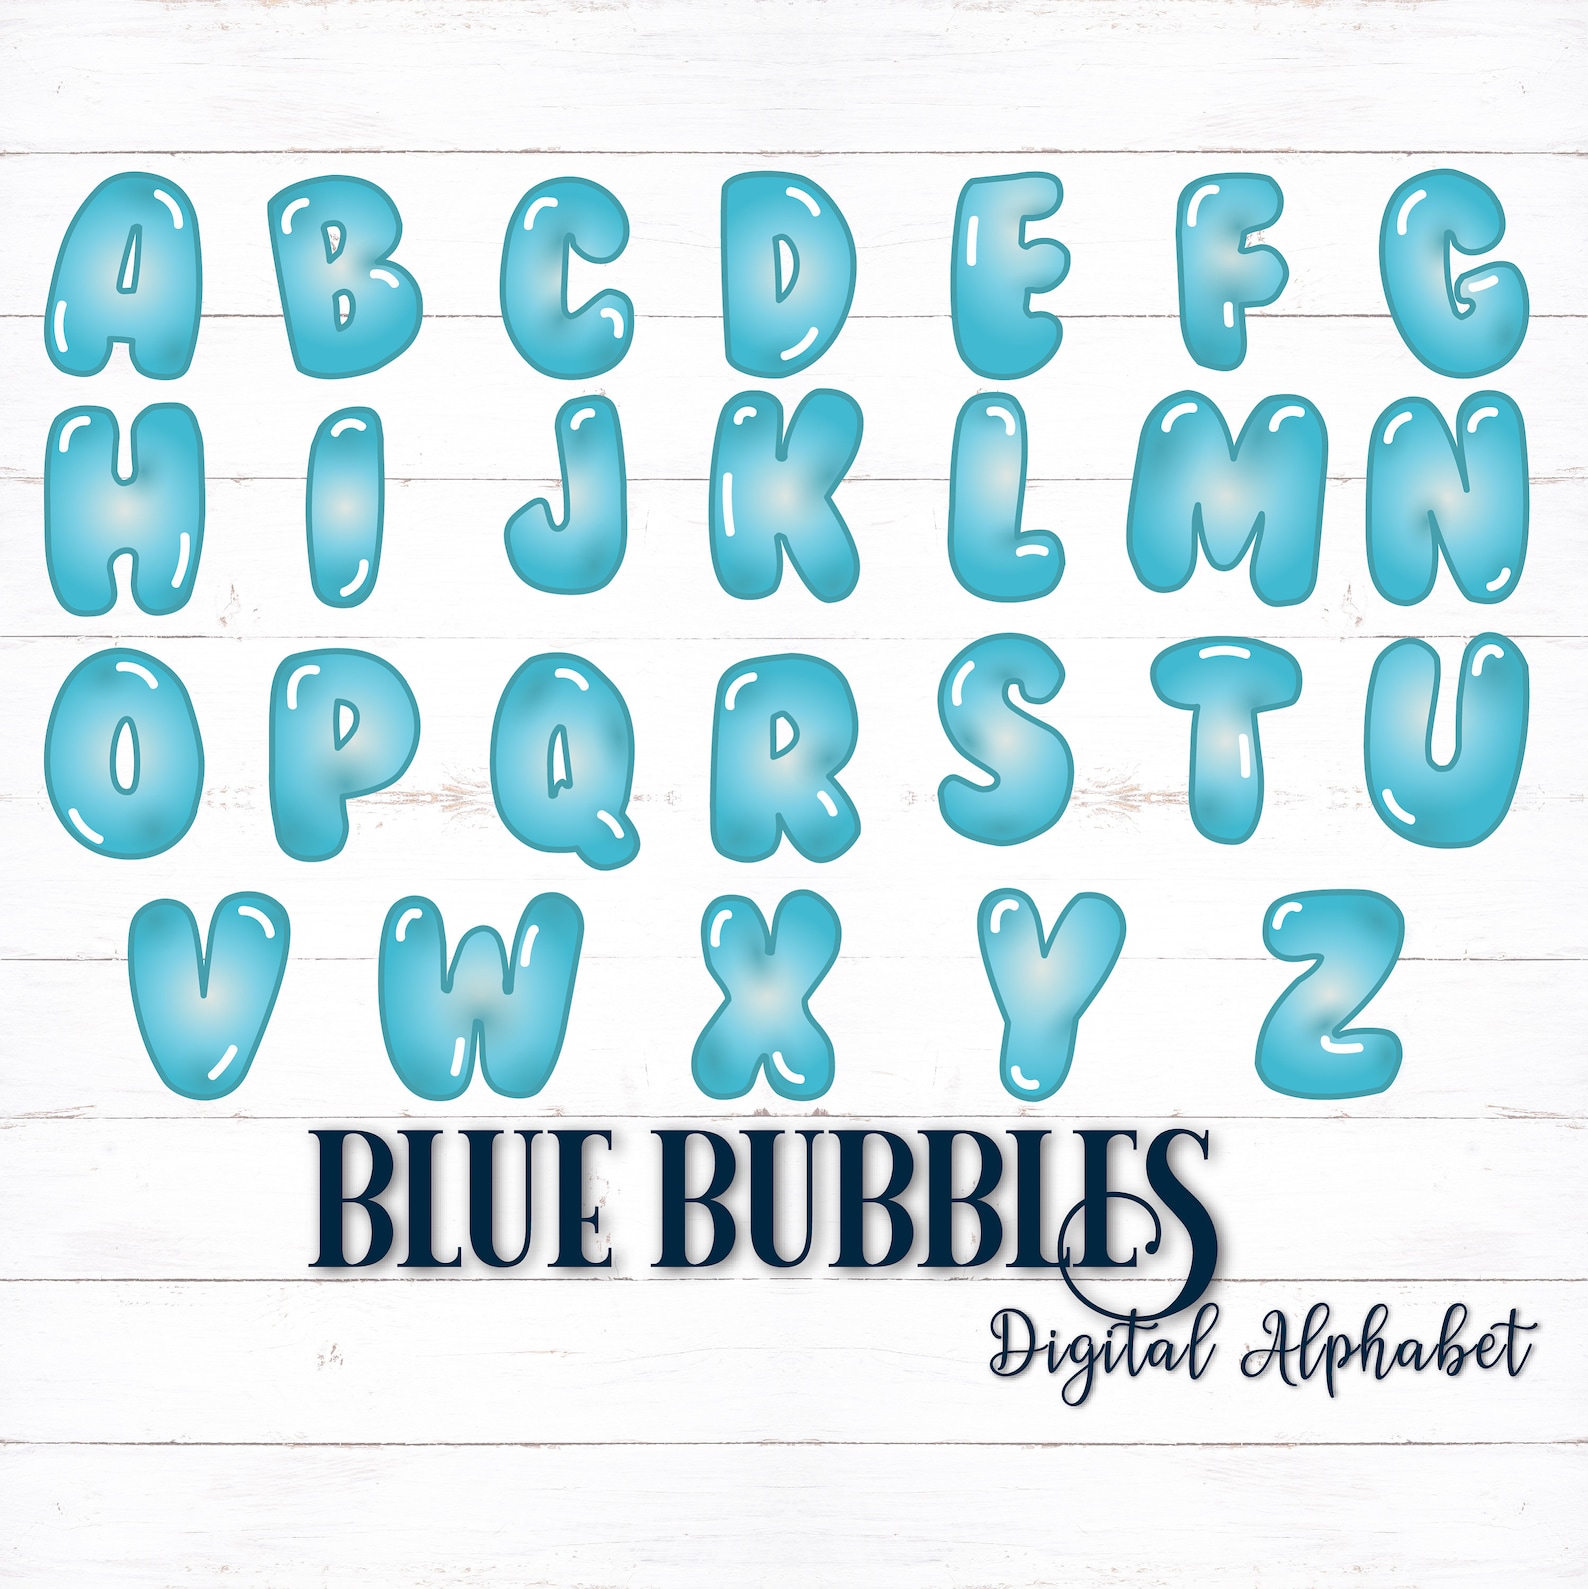 Printable Digital Alphabet Letters Bubble Letters Bubble Etsy